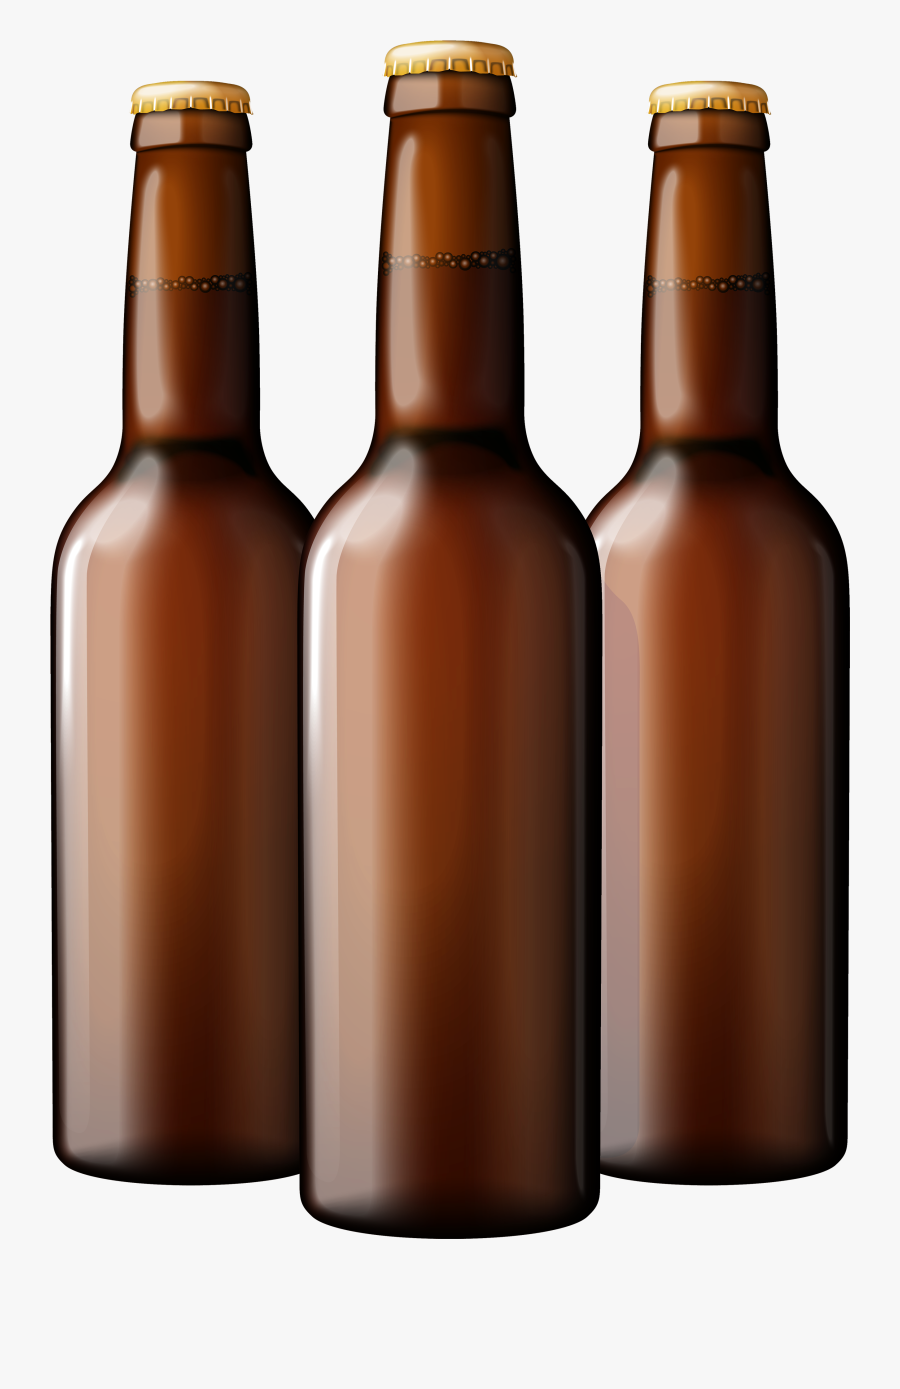 Jar Clipart Beer - Beer Bottle Png Transparent, Transparent Clipart